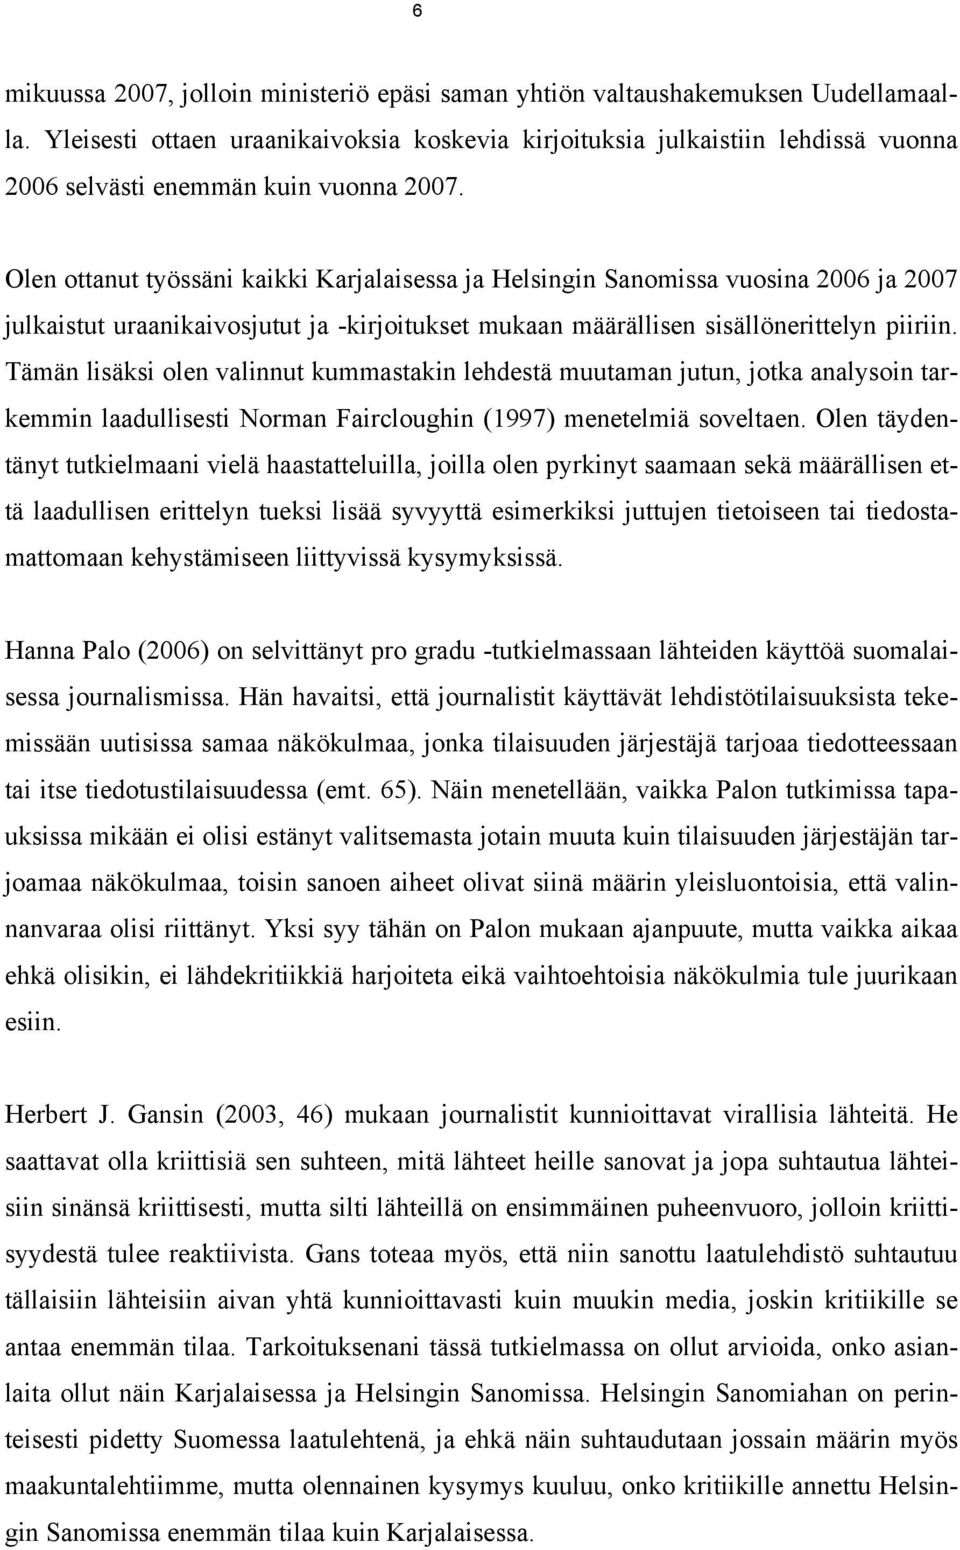 Olen ottanut työssäni kaikki Karjalaisessa ja Helsingin Sanomissa vuosina 2006 ja 2007 julkaistut uraanikaivosjutut ja -kirjoitukset mukaan määrällisen sisällönerittelyn piiriin.